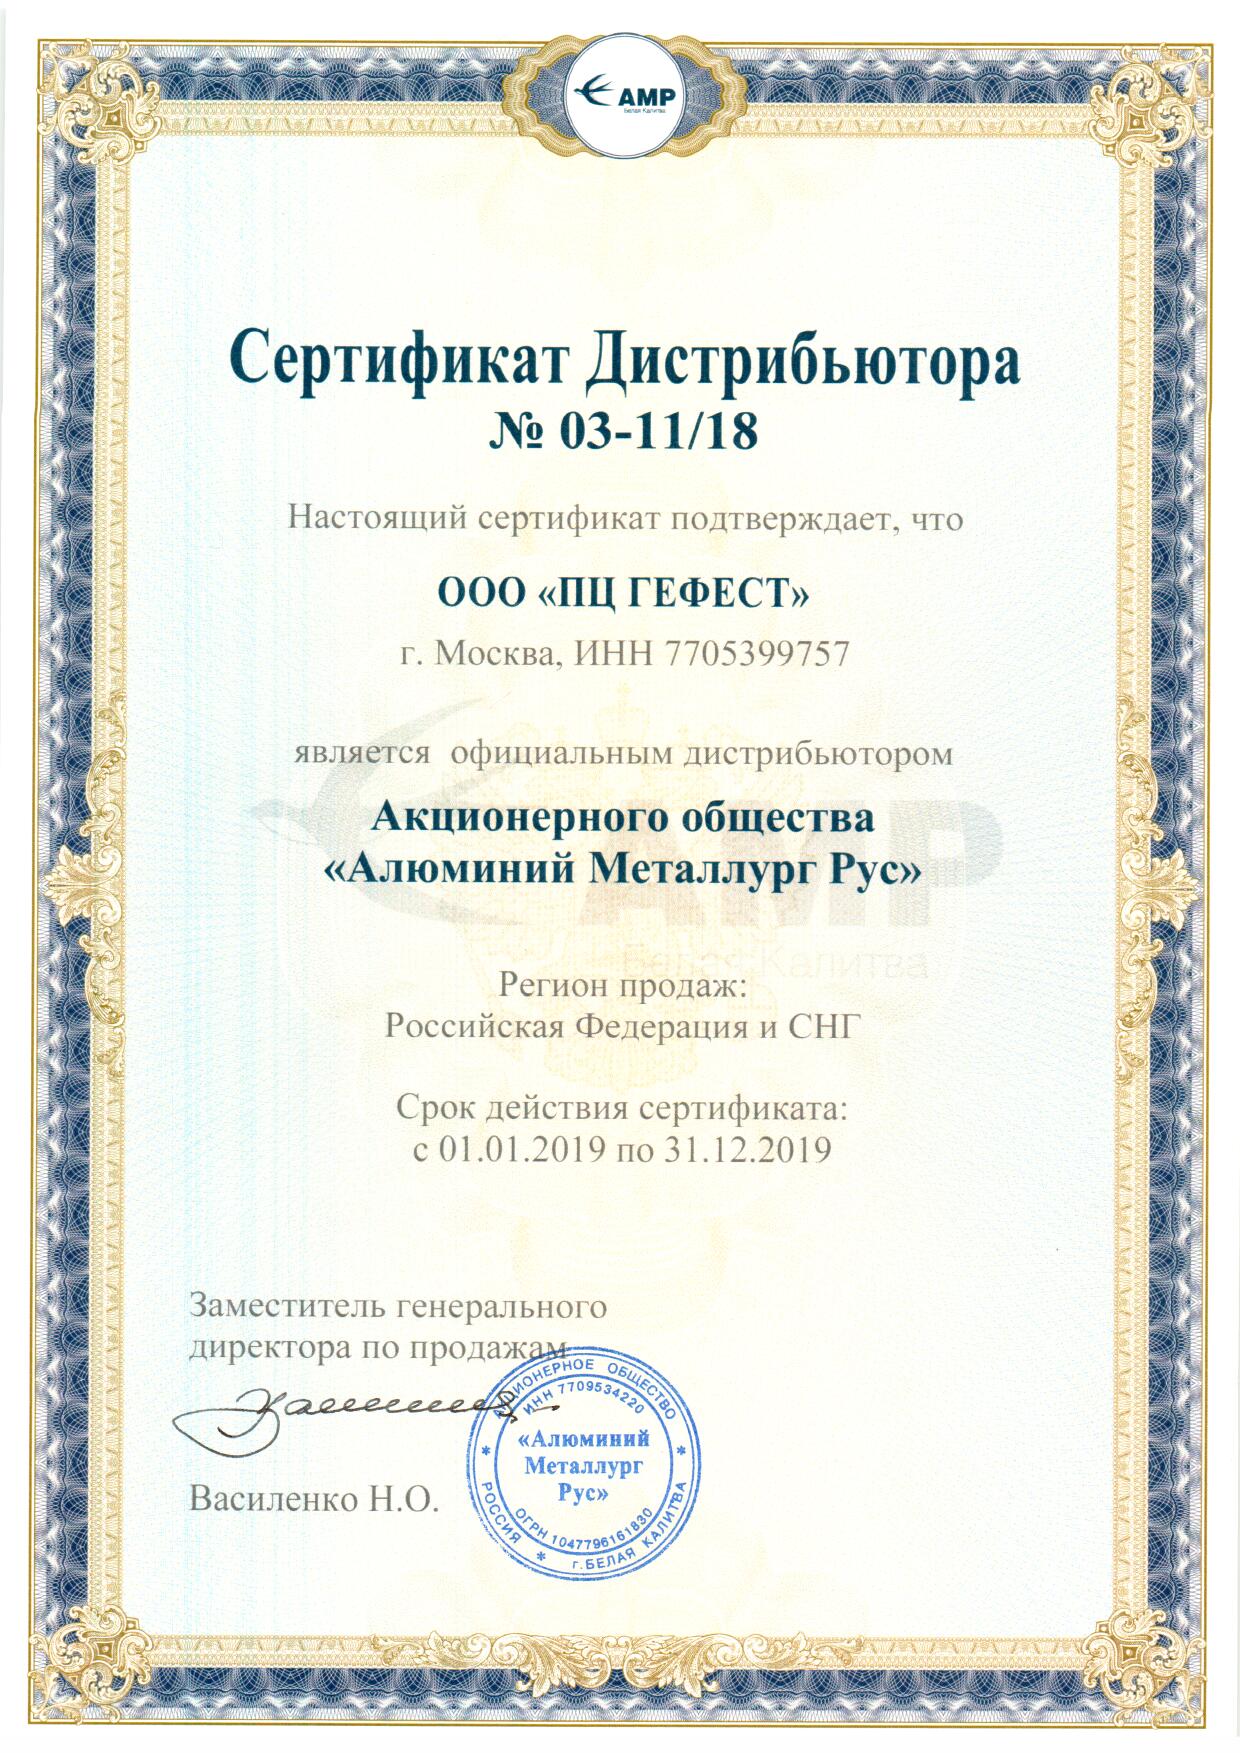 Сертификат дистрибьютора АО "АМР" 2019 г.